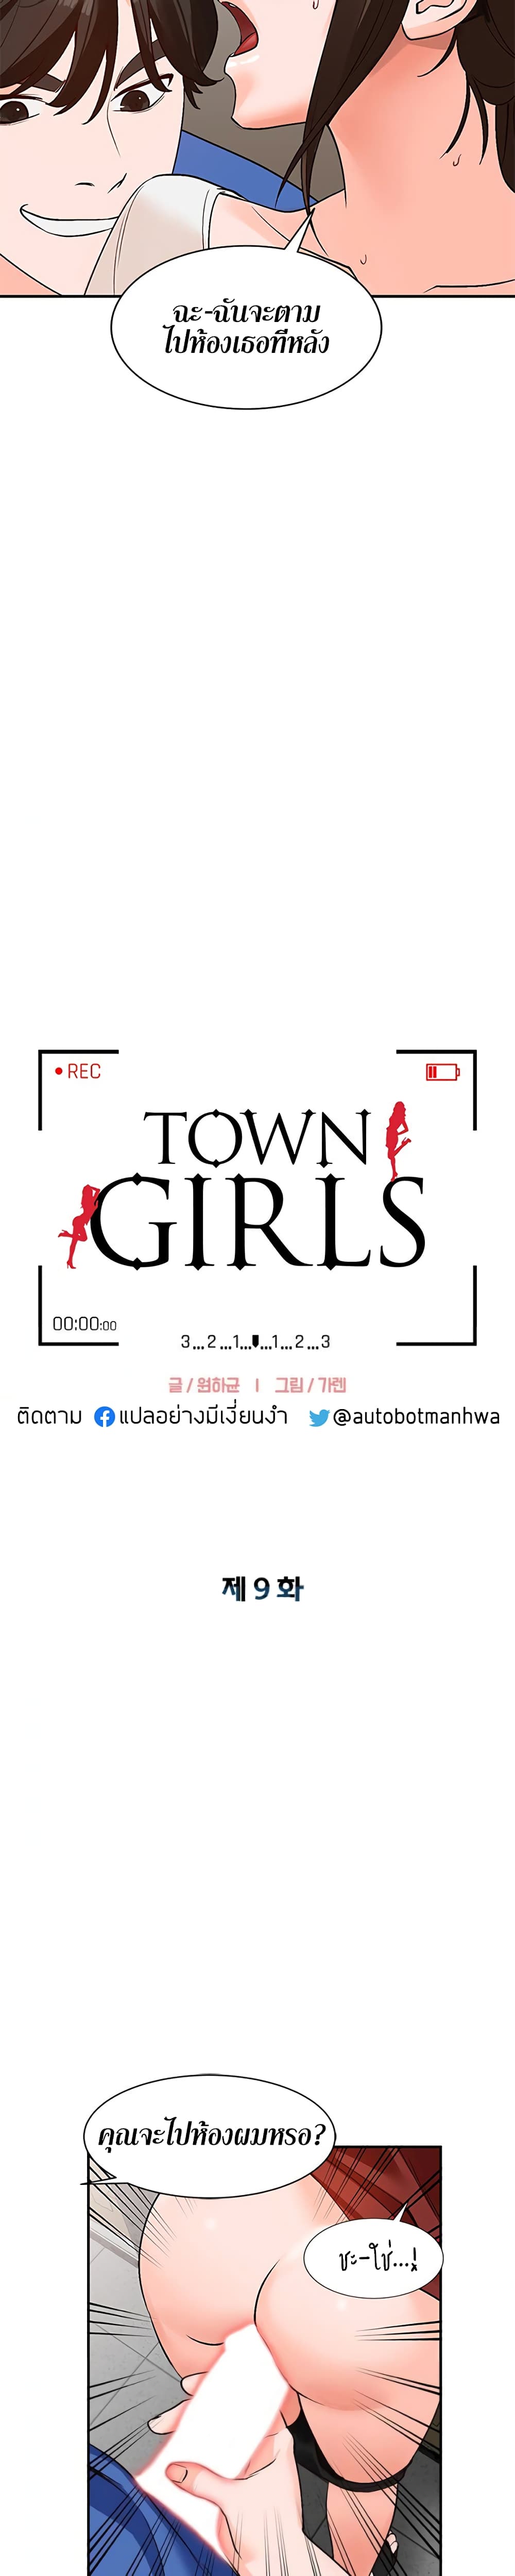 Town Girls 9 03